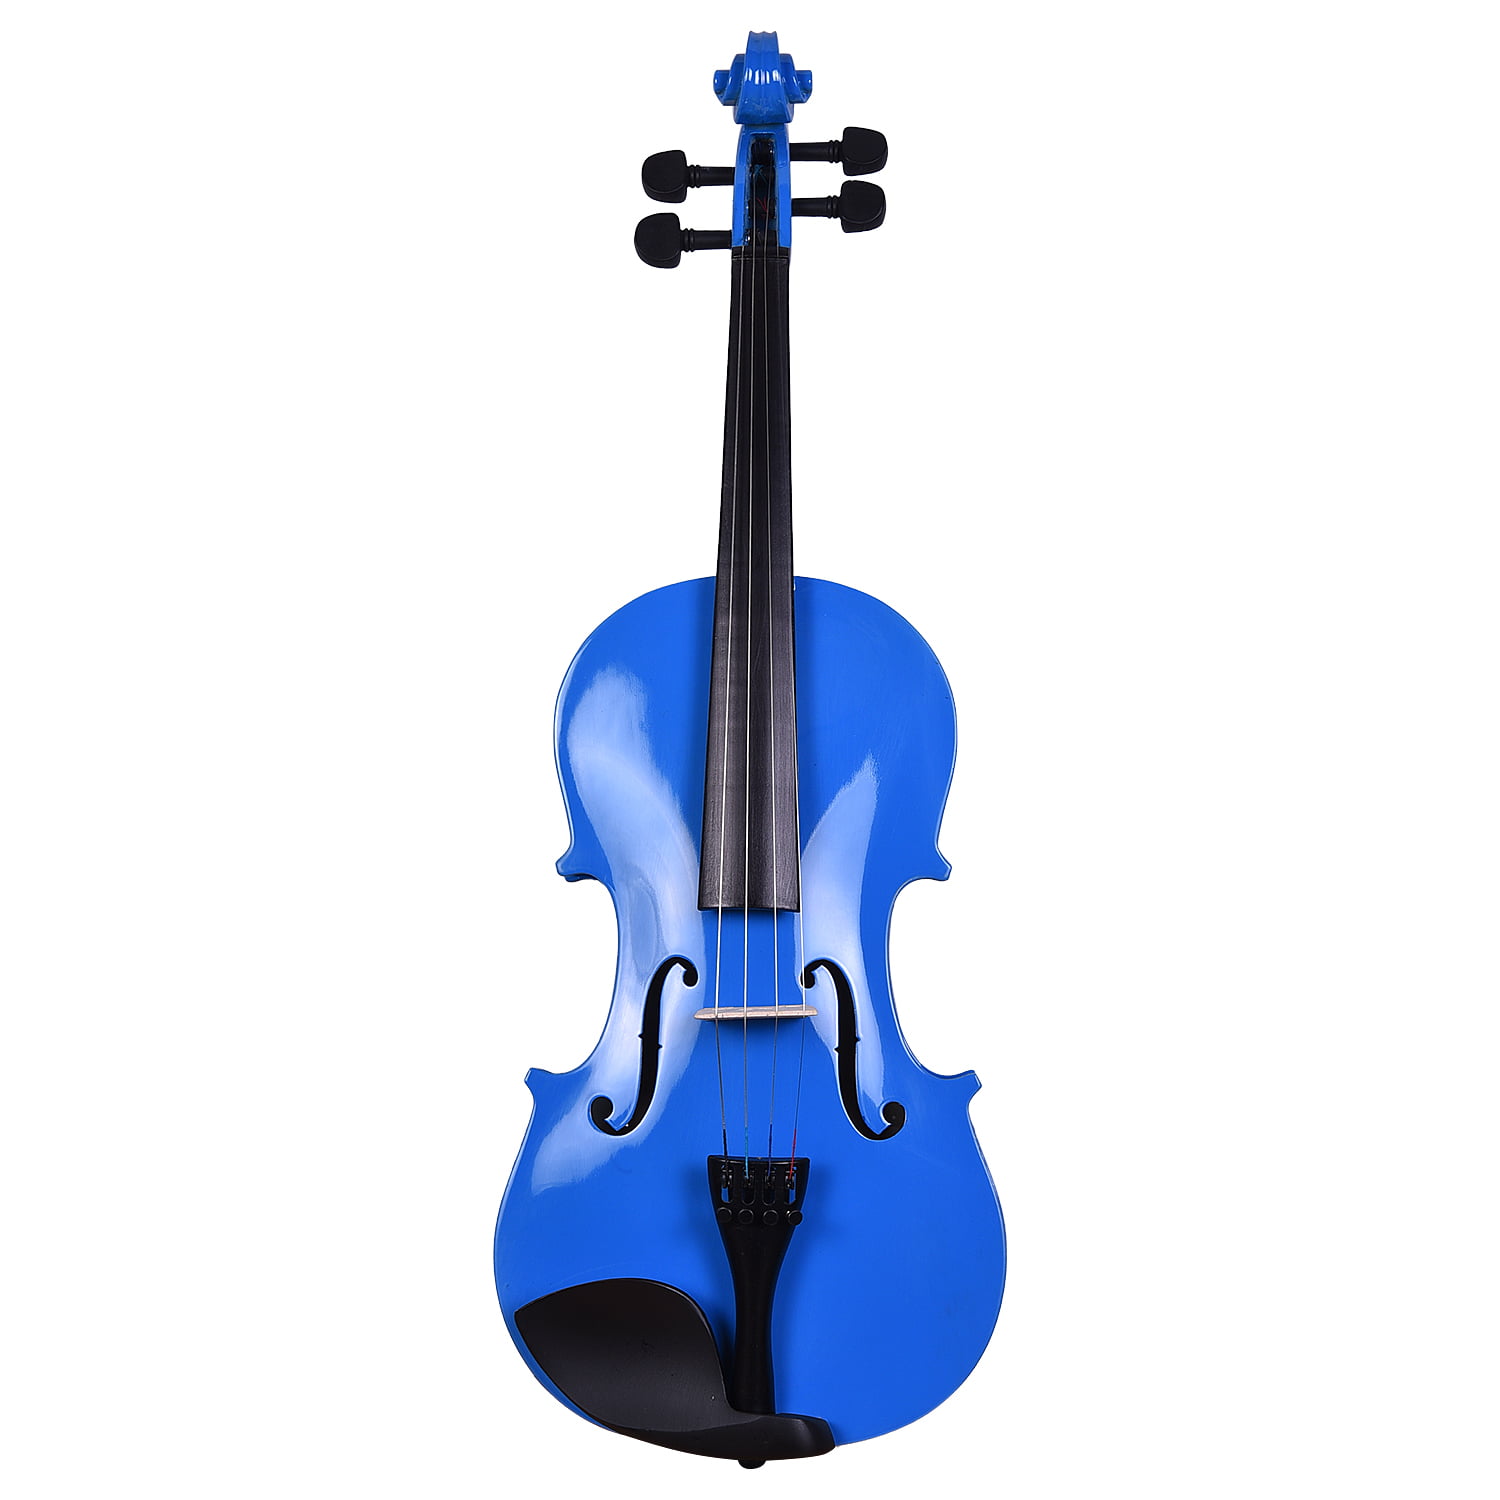 vivaldi violin